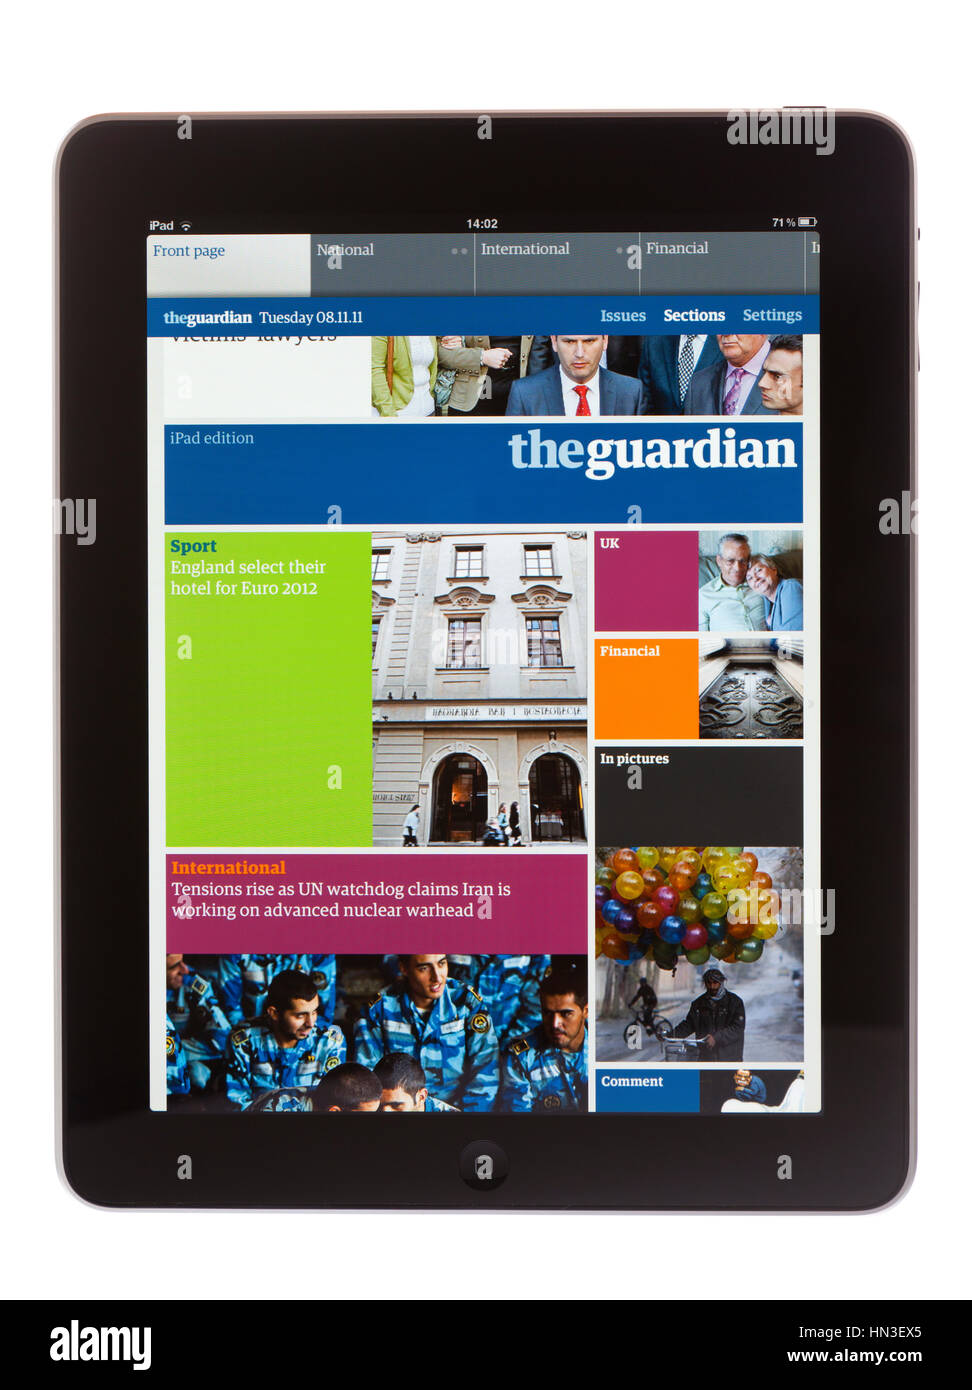 BATH, Großbritannien - 8. November 2011: An Apple iPad iPad-Ausgabe der Zeitung the Guardian vor einem weißen Hintergrund angezeigt. Die Zeitung kann nach unten sein. Stockfoto